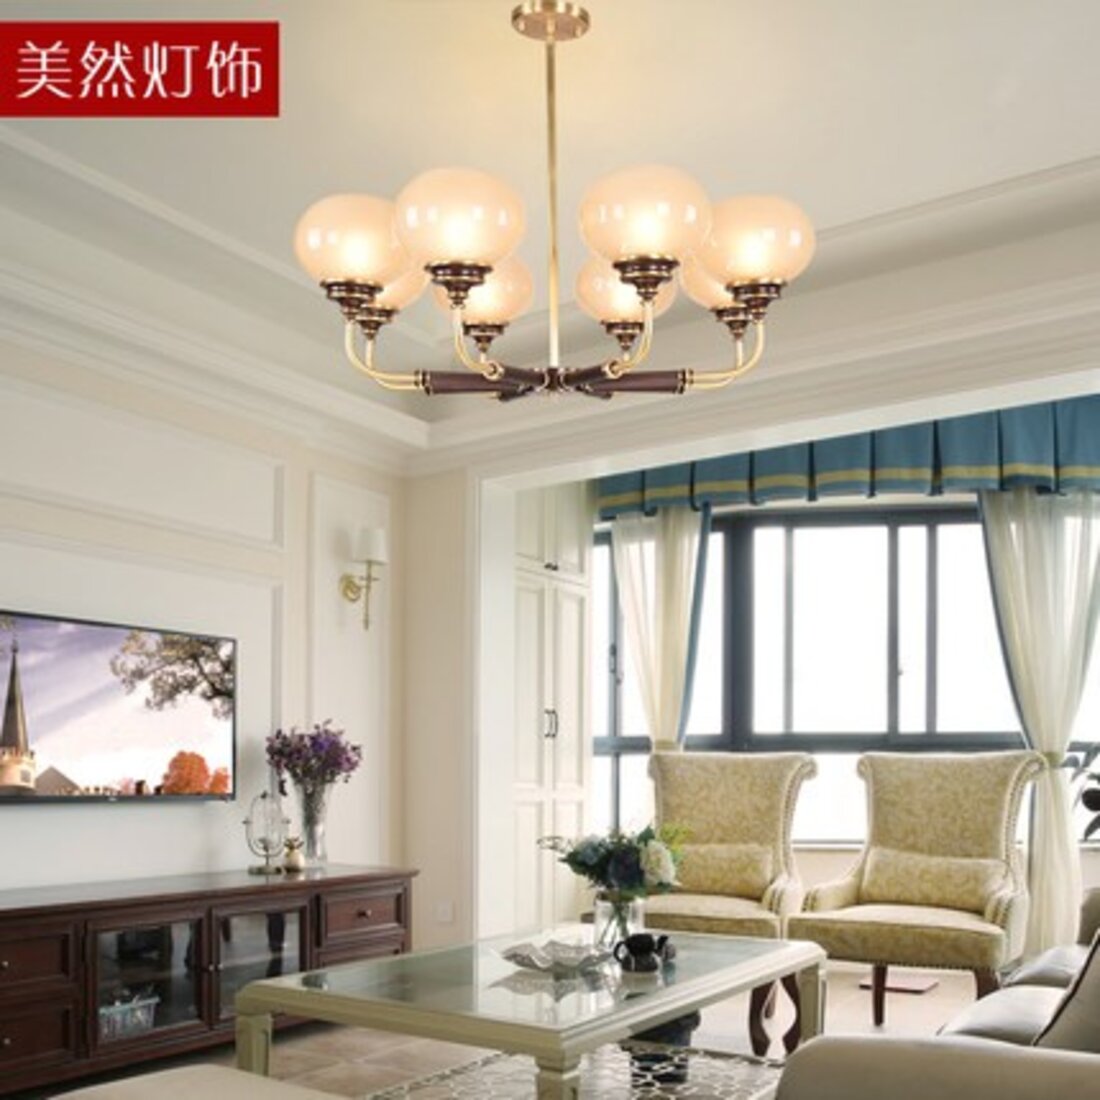 新中式别墅客厅吊顶吊灯装修效果图 – 设计本装修效果图